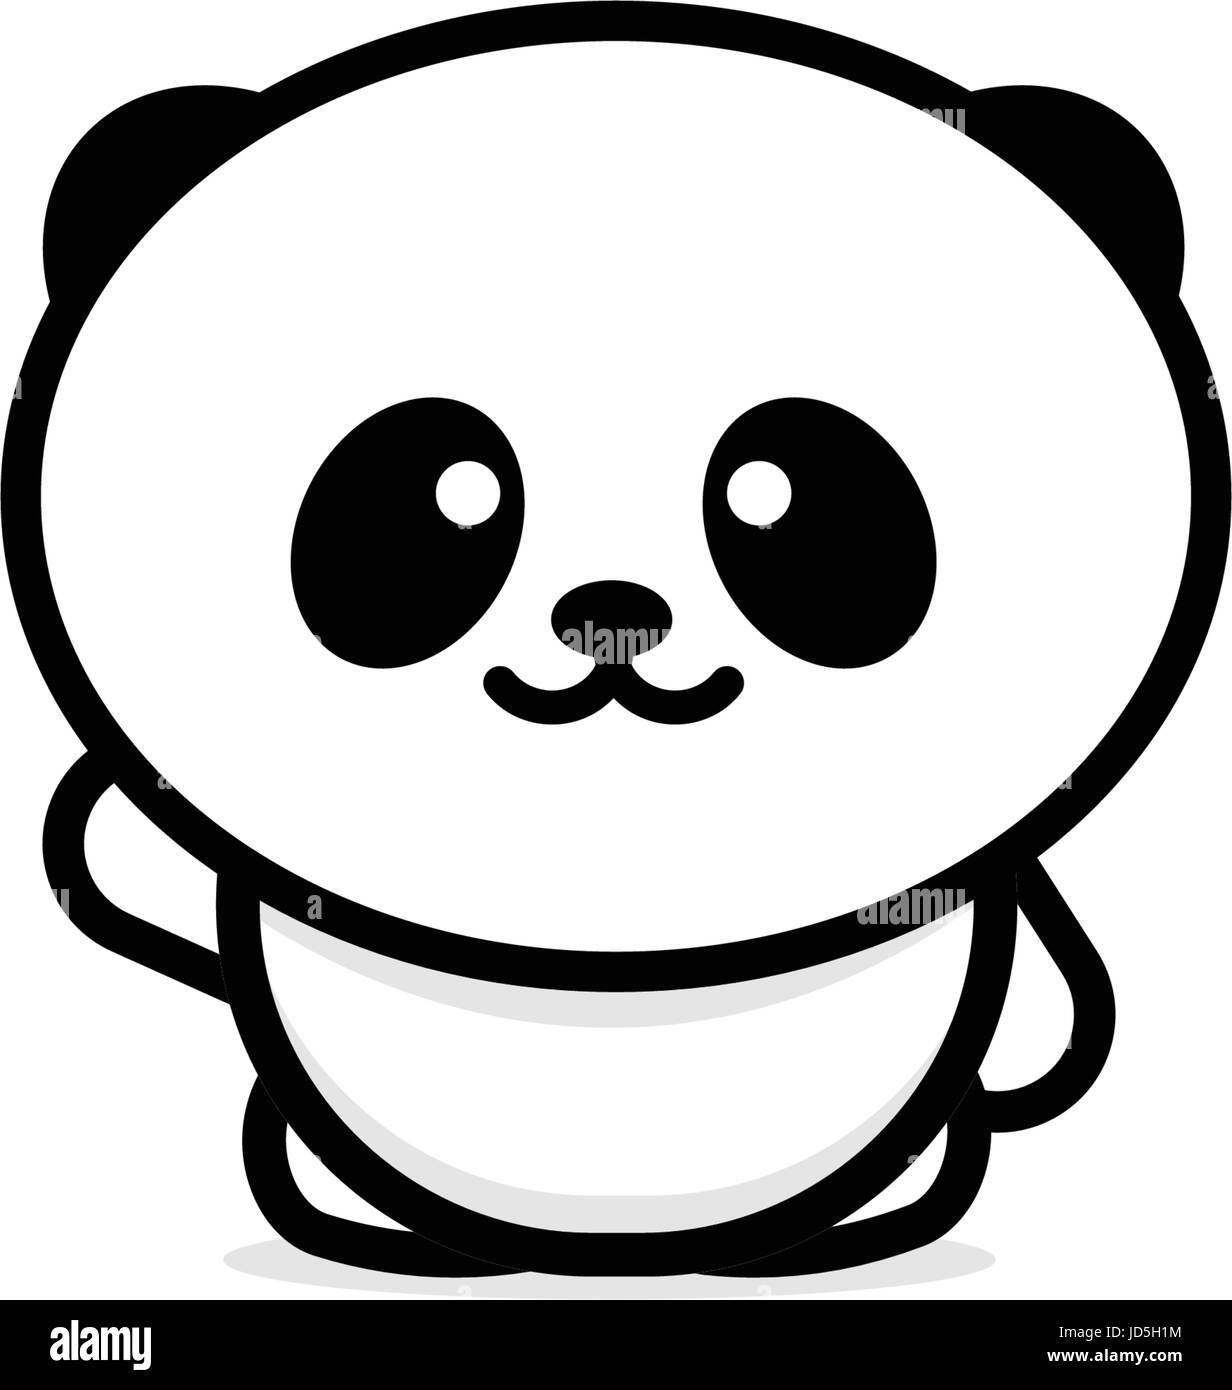 Grazioso Panda accoglie agitando la mano illustrazione vettoriale, baby orso logo, la nuova linea di design, arte cinese di Teddy bear colore nero segno, semplice immagine, pictu Illustrazione Vettoriale